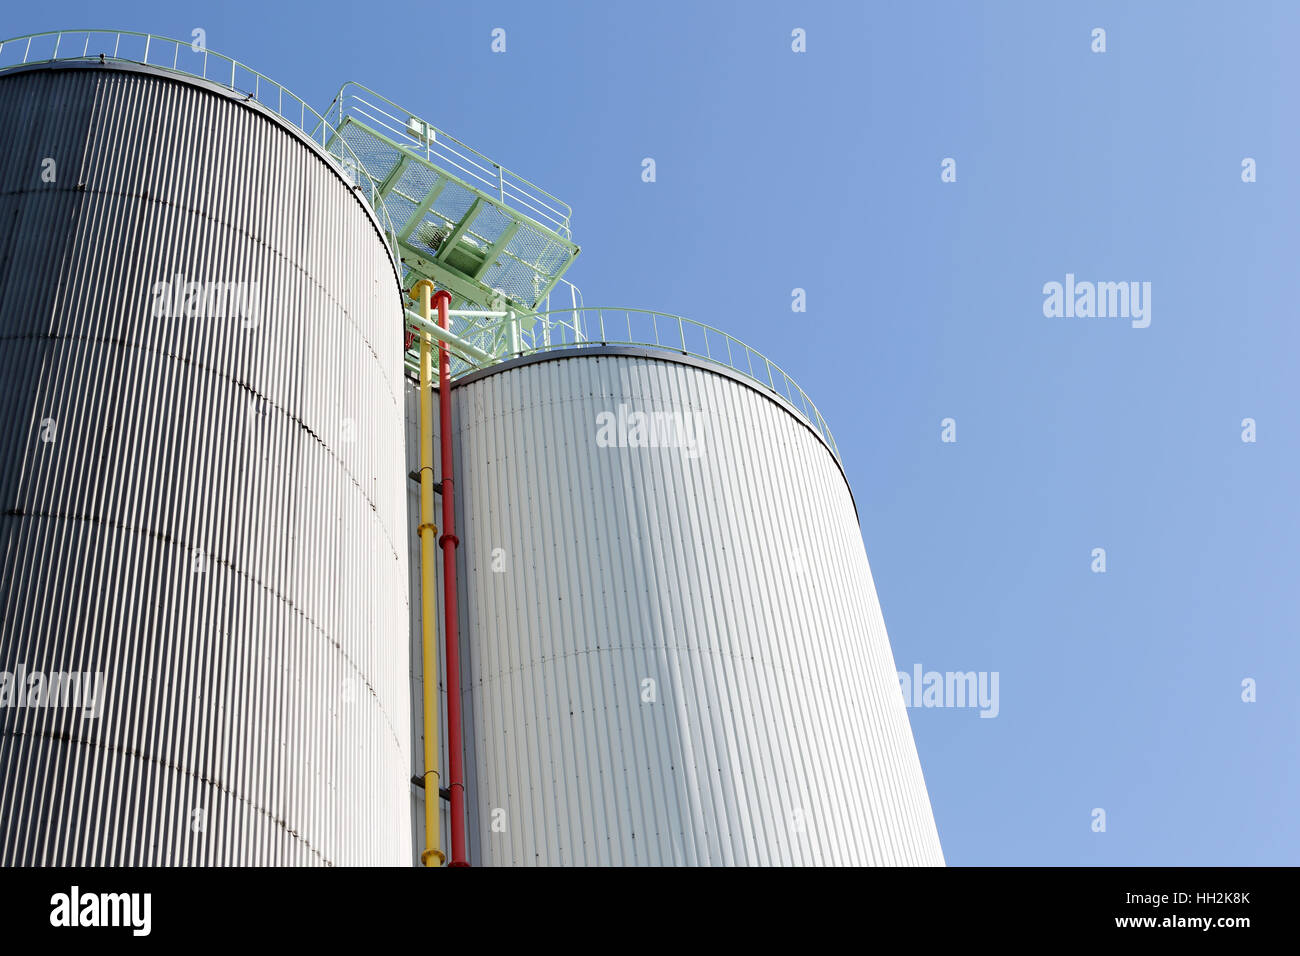 Industriali silo di storage contro il cielo blu chiaro Foto Stock